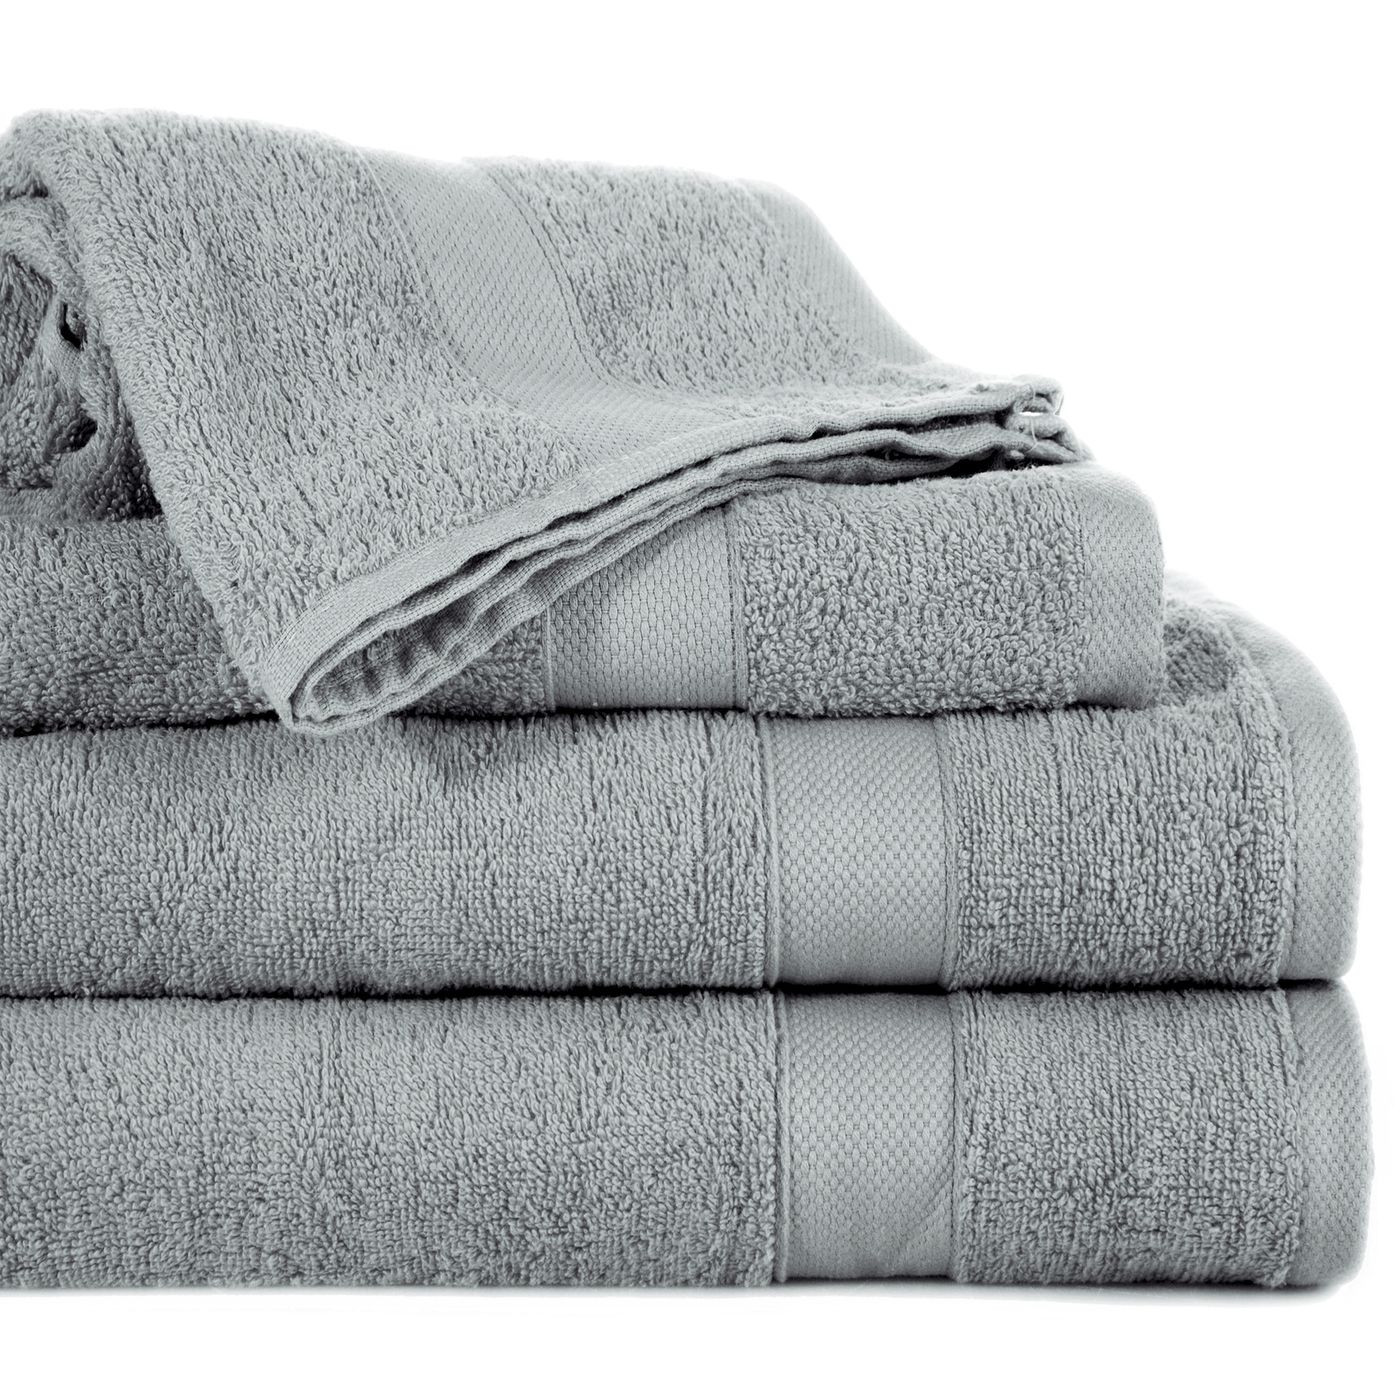 Miękki chłonny ręcznik kąpielowy stalowy 50x90